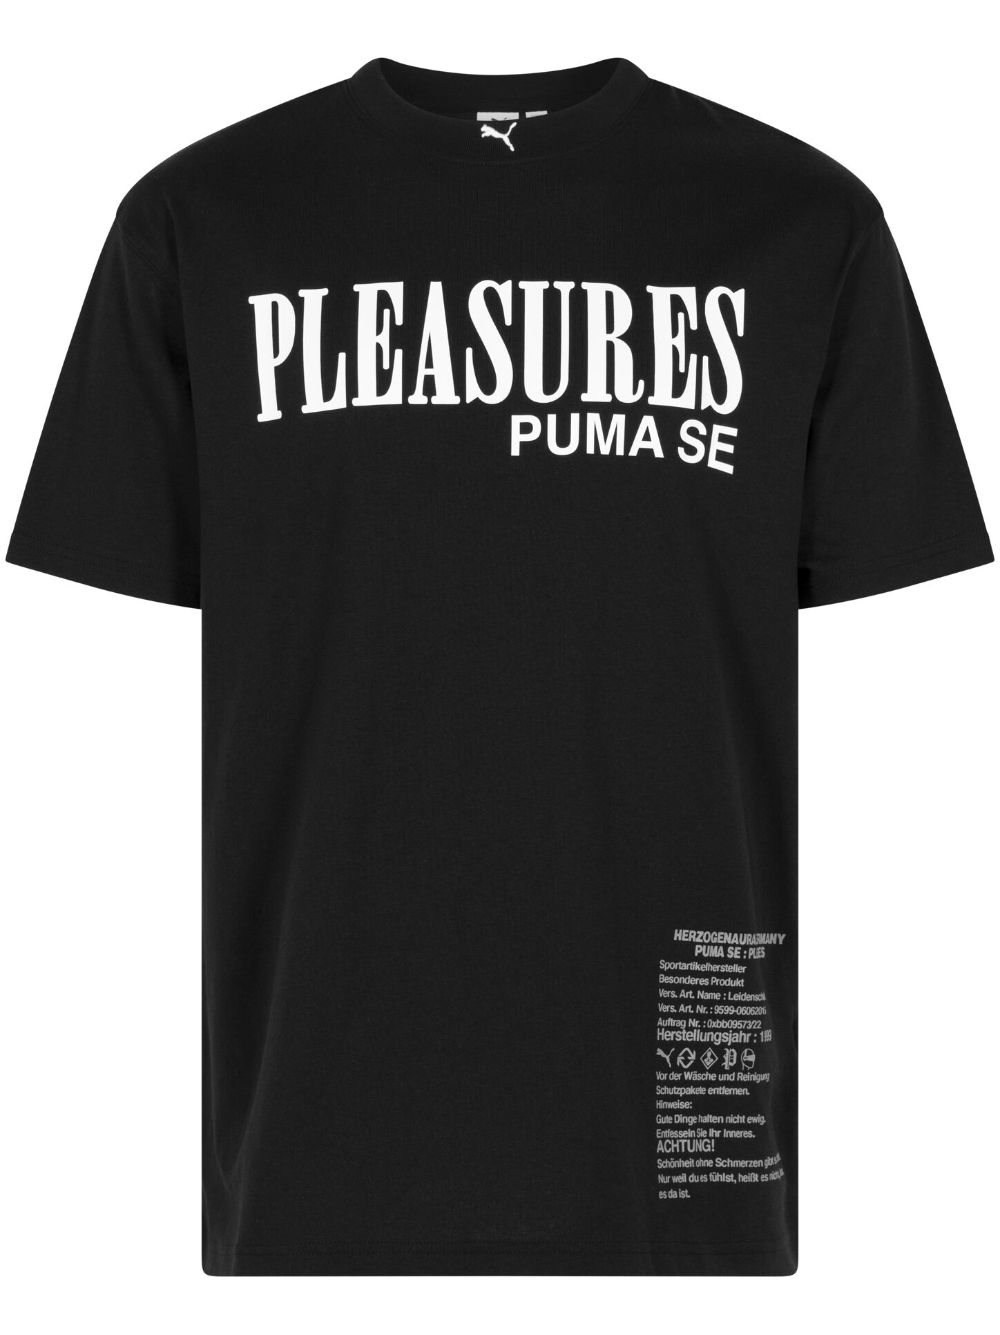 PUMA x Pleasures Typo katoenen T-shirt Zwart